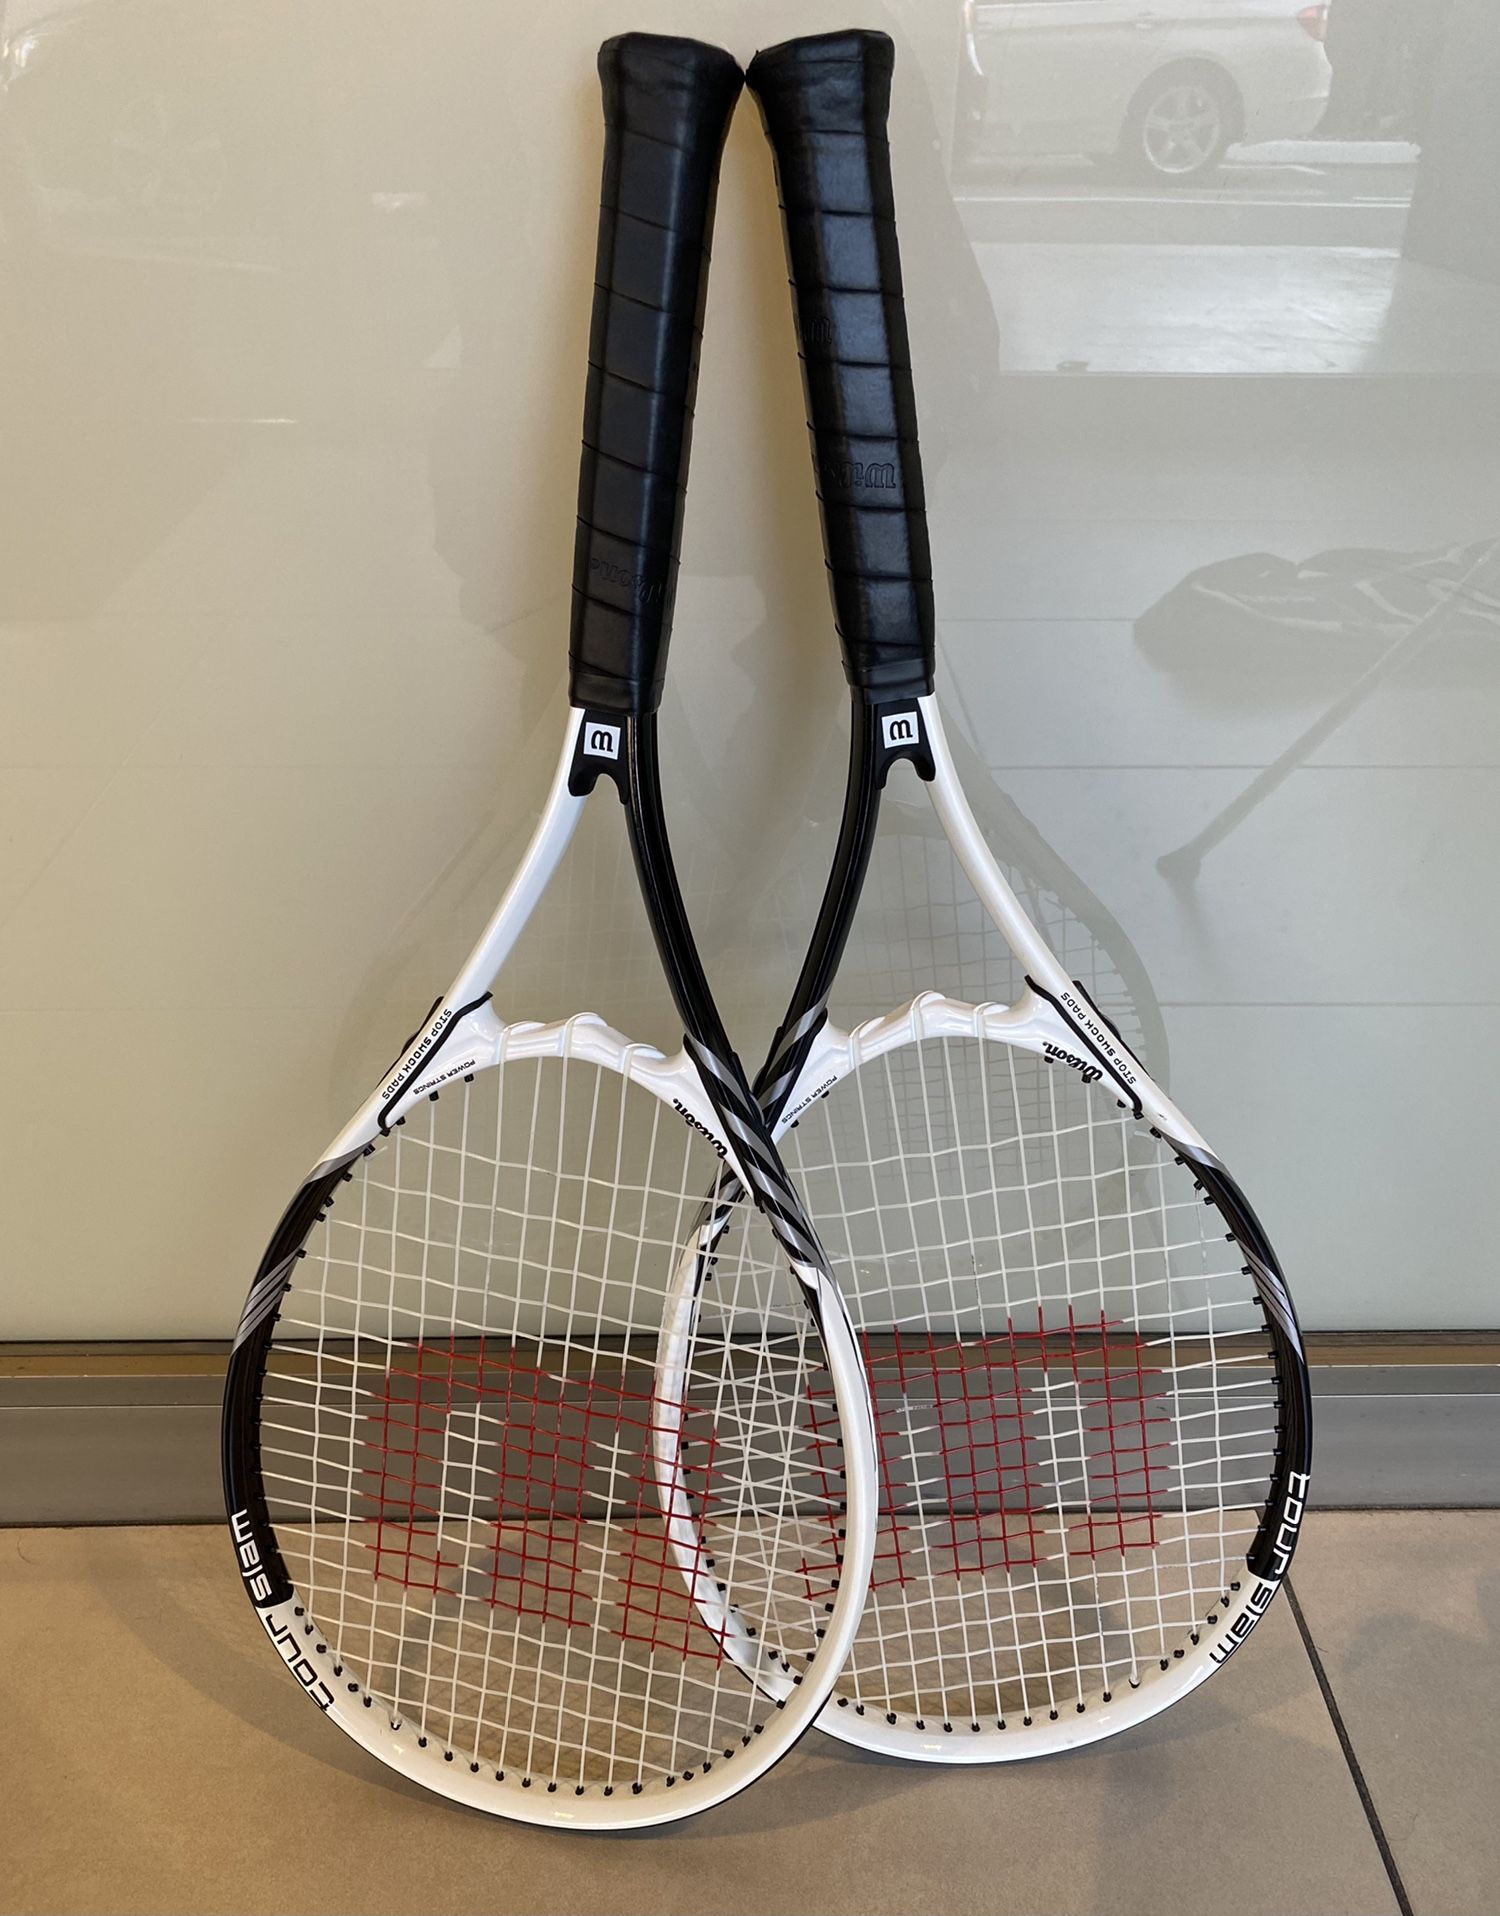 Wilson Tennis Rackets (Set of 2) New!!!